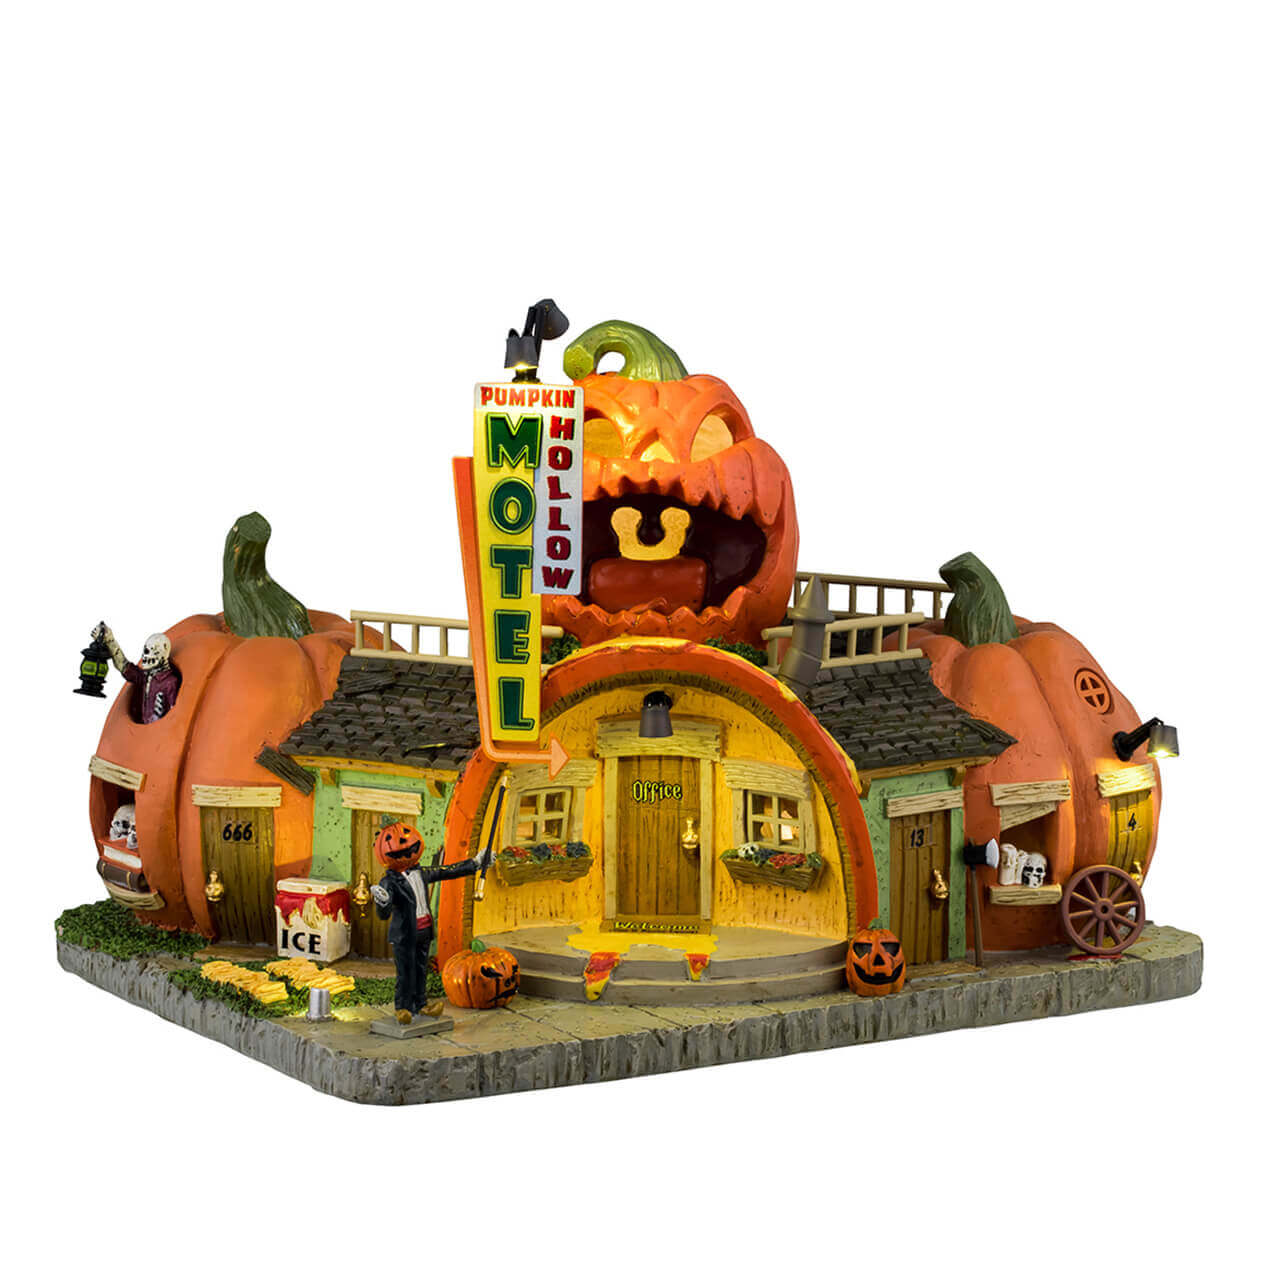 Lemax 45206 Pumpkin Hollow Motel